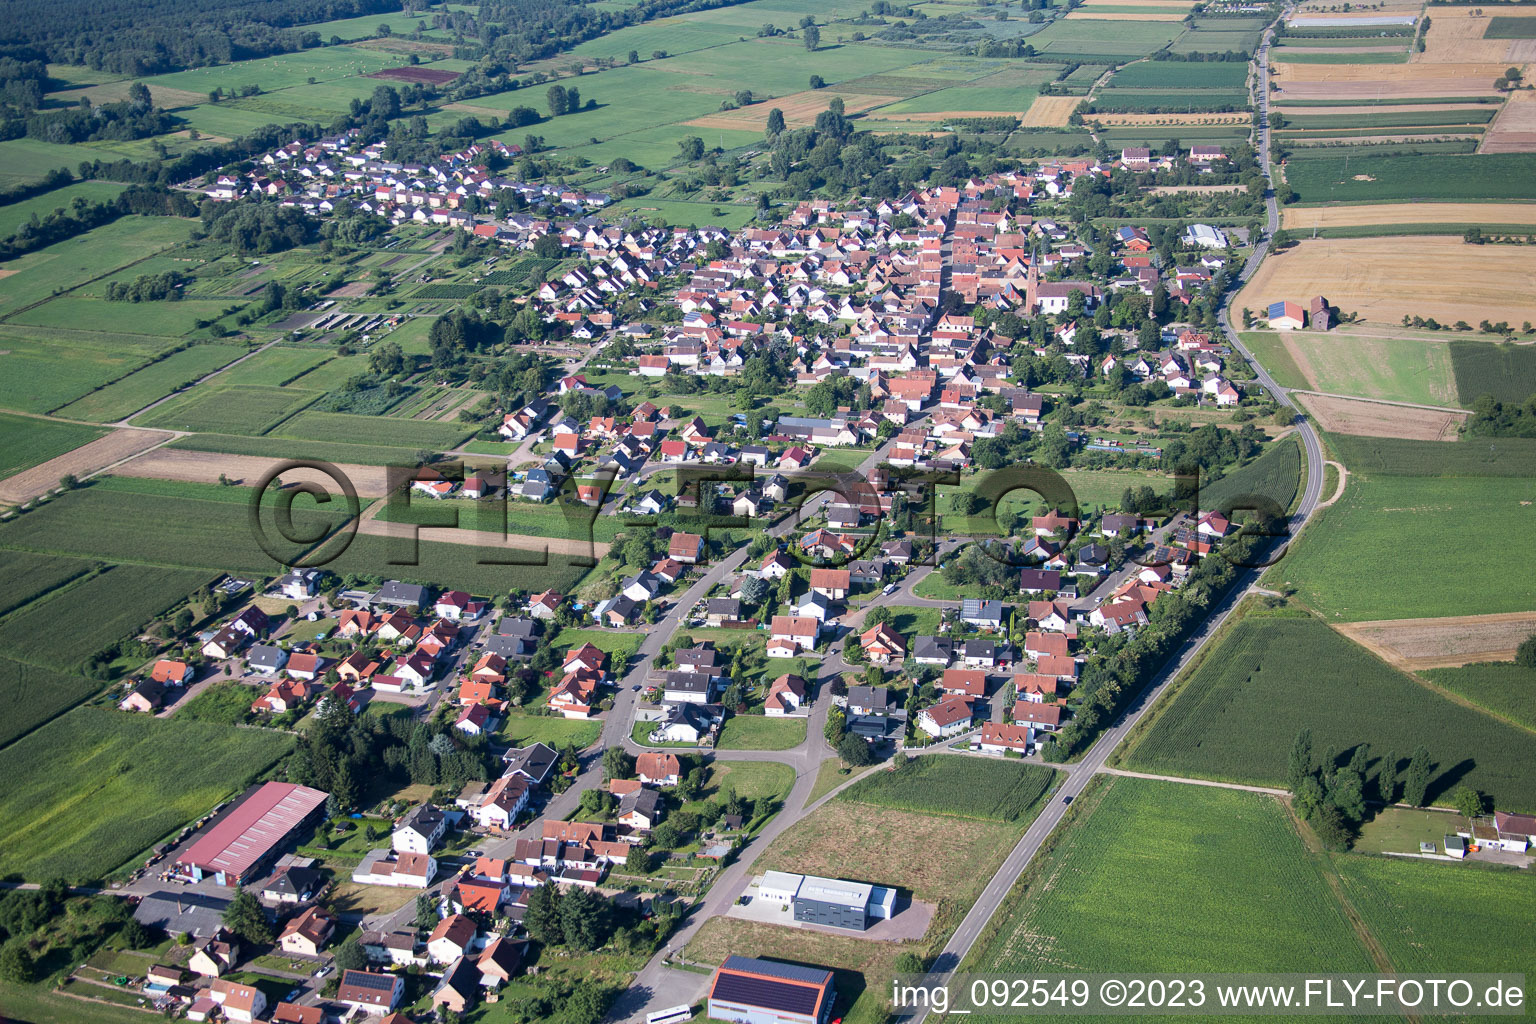 Steinfeld im Bundesland Rheinland-Pfalz, Deutschland aus der Luft betrachtet